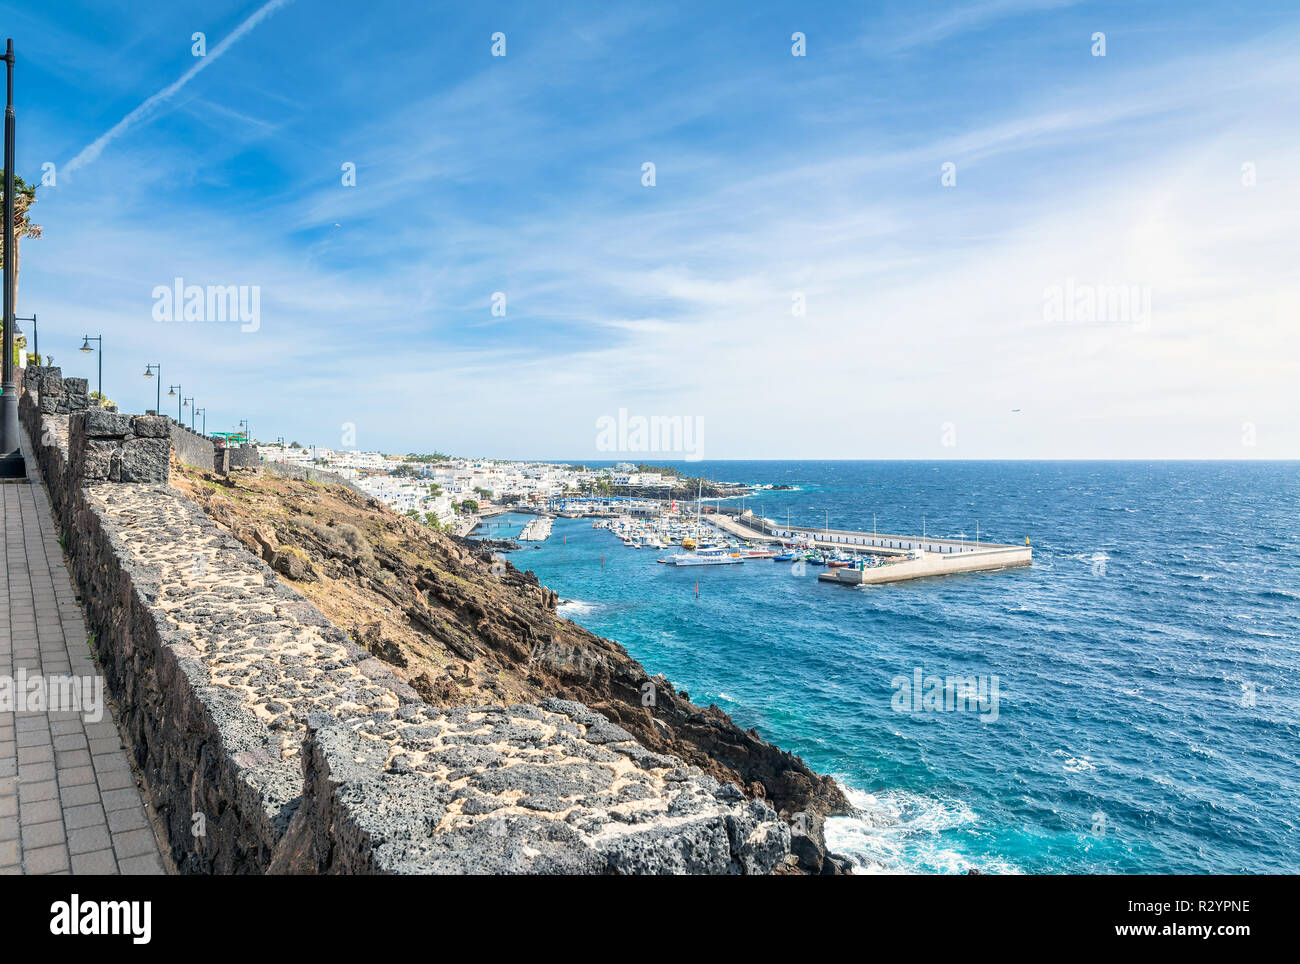 Puerto del Carmen, Spanien - 30. Dezember 2016: Tag Blick auf Altstadt und Hafen Promenade mit Touristen in Puerto del Carmen, Spanien. Puerto del Carmen ist Stockfoto